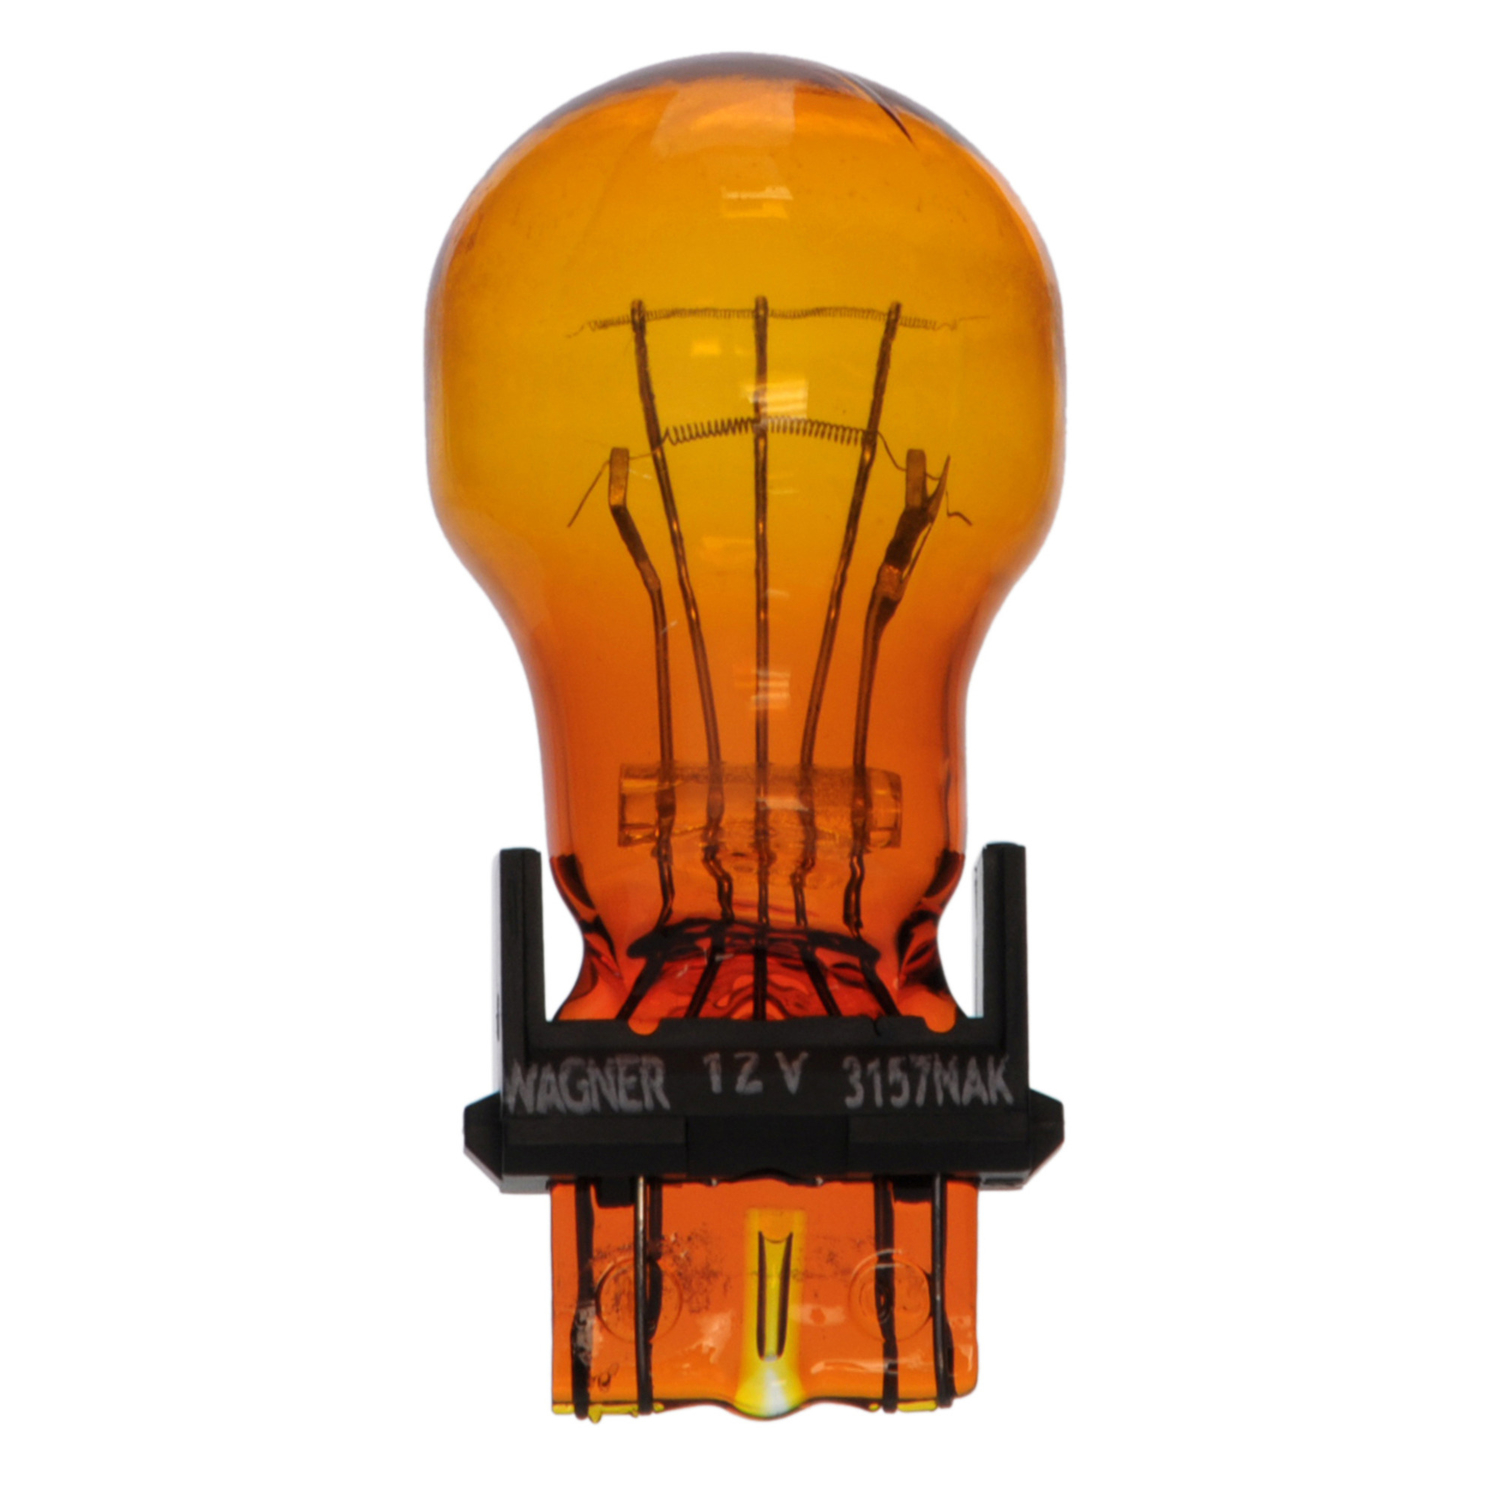 WAGNER LIGHTING - Long Life Miniature Boxed Running Light Bulb - WLP 3157NALL